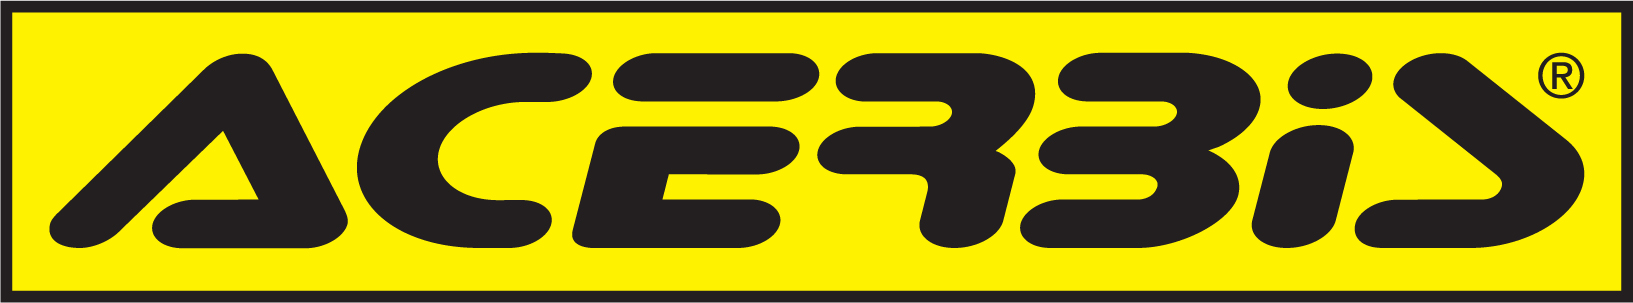 XR3i vector logo